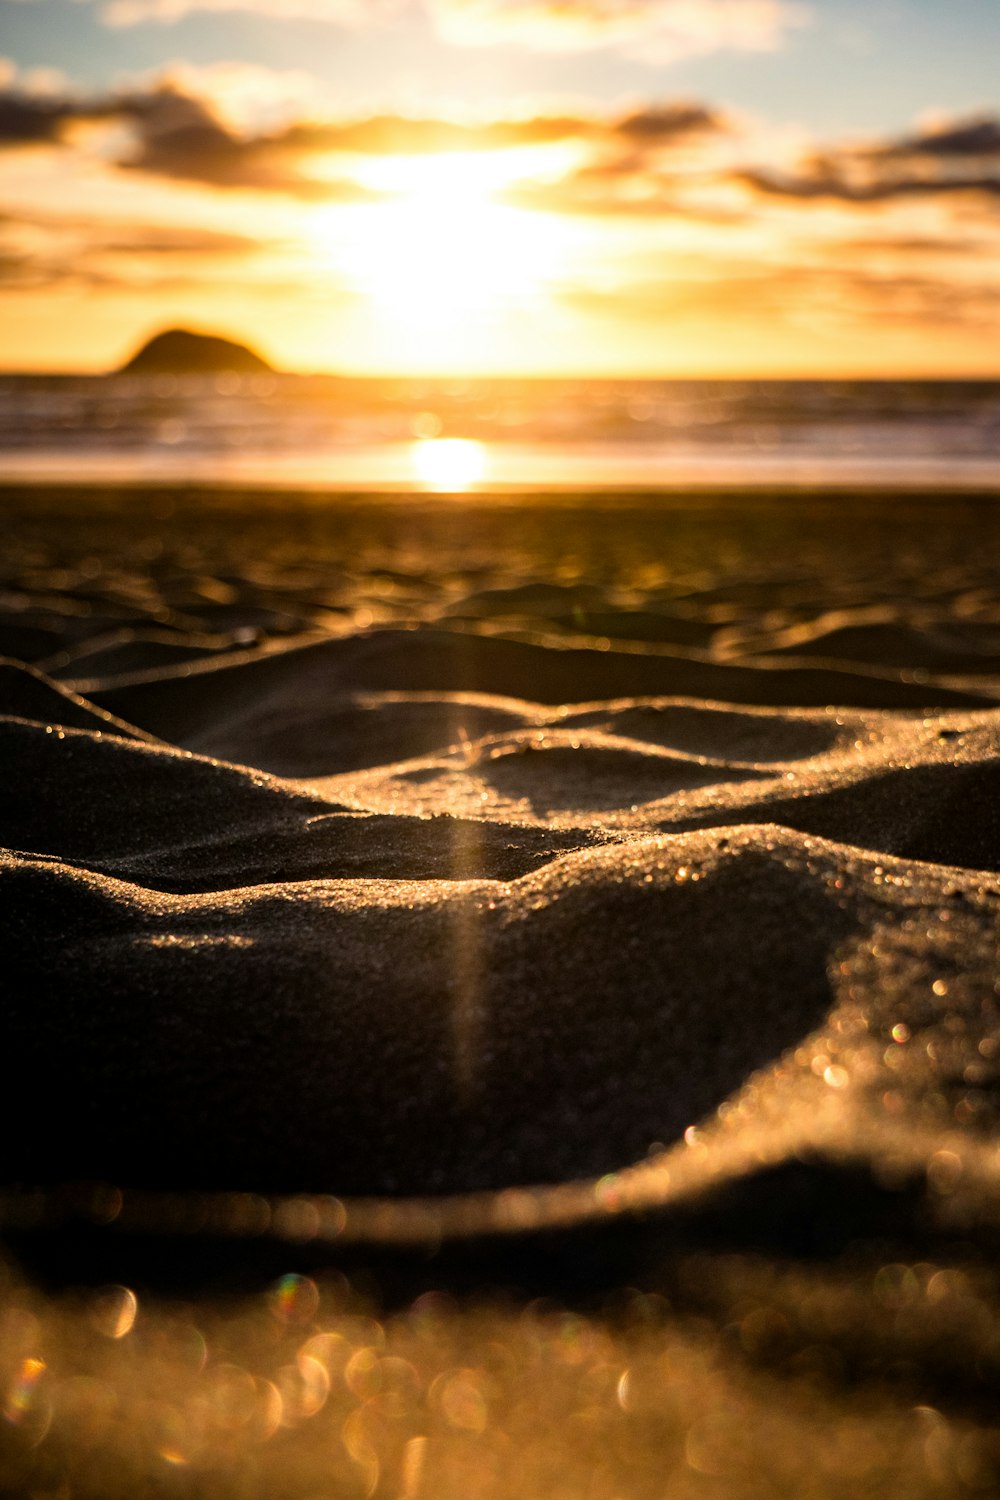 Il sole sta tramontando sulla spiaggia e sulla sabbia